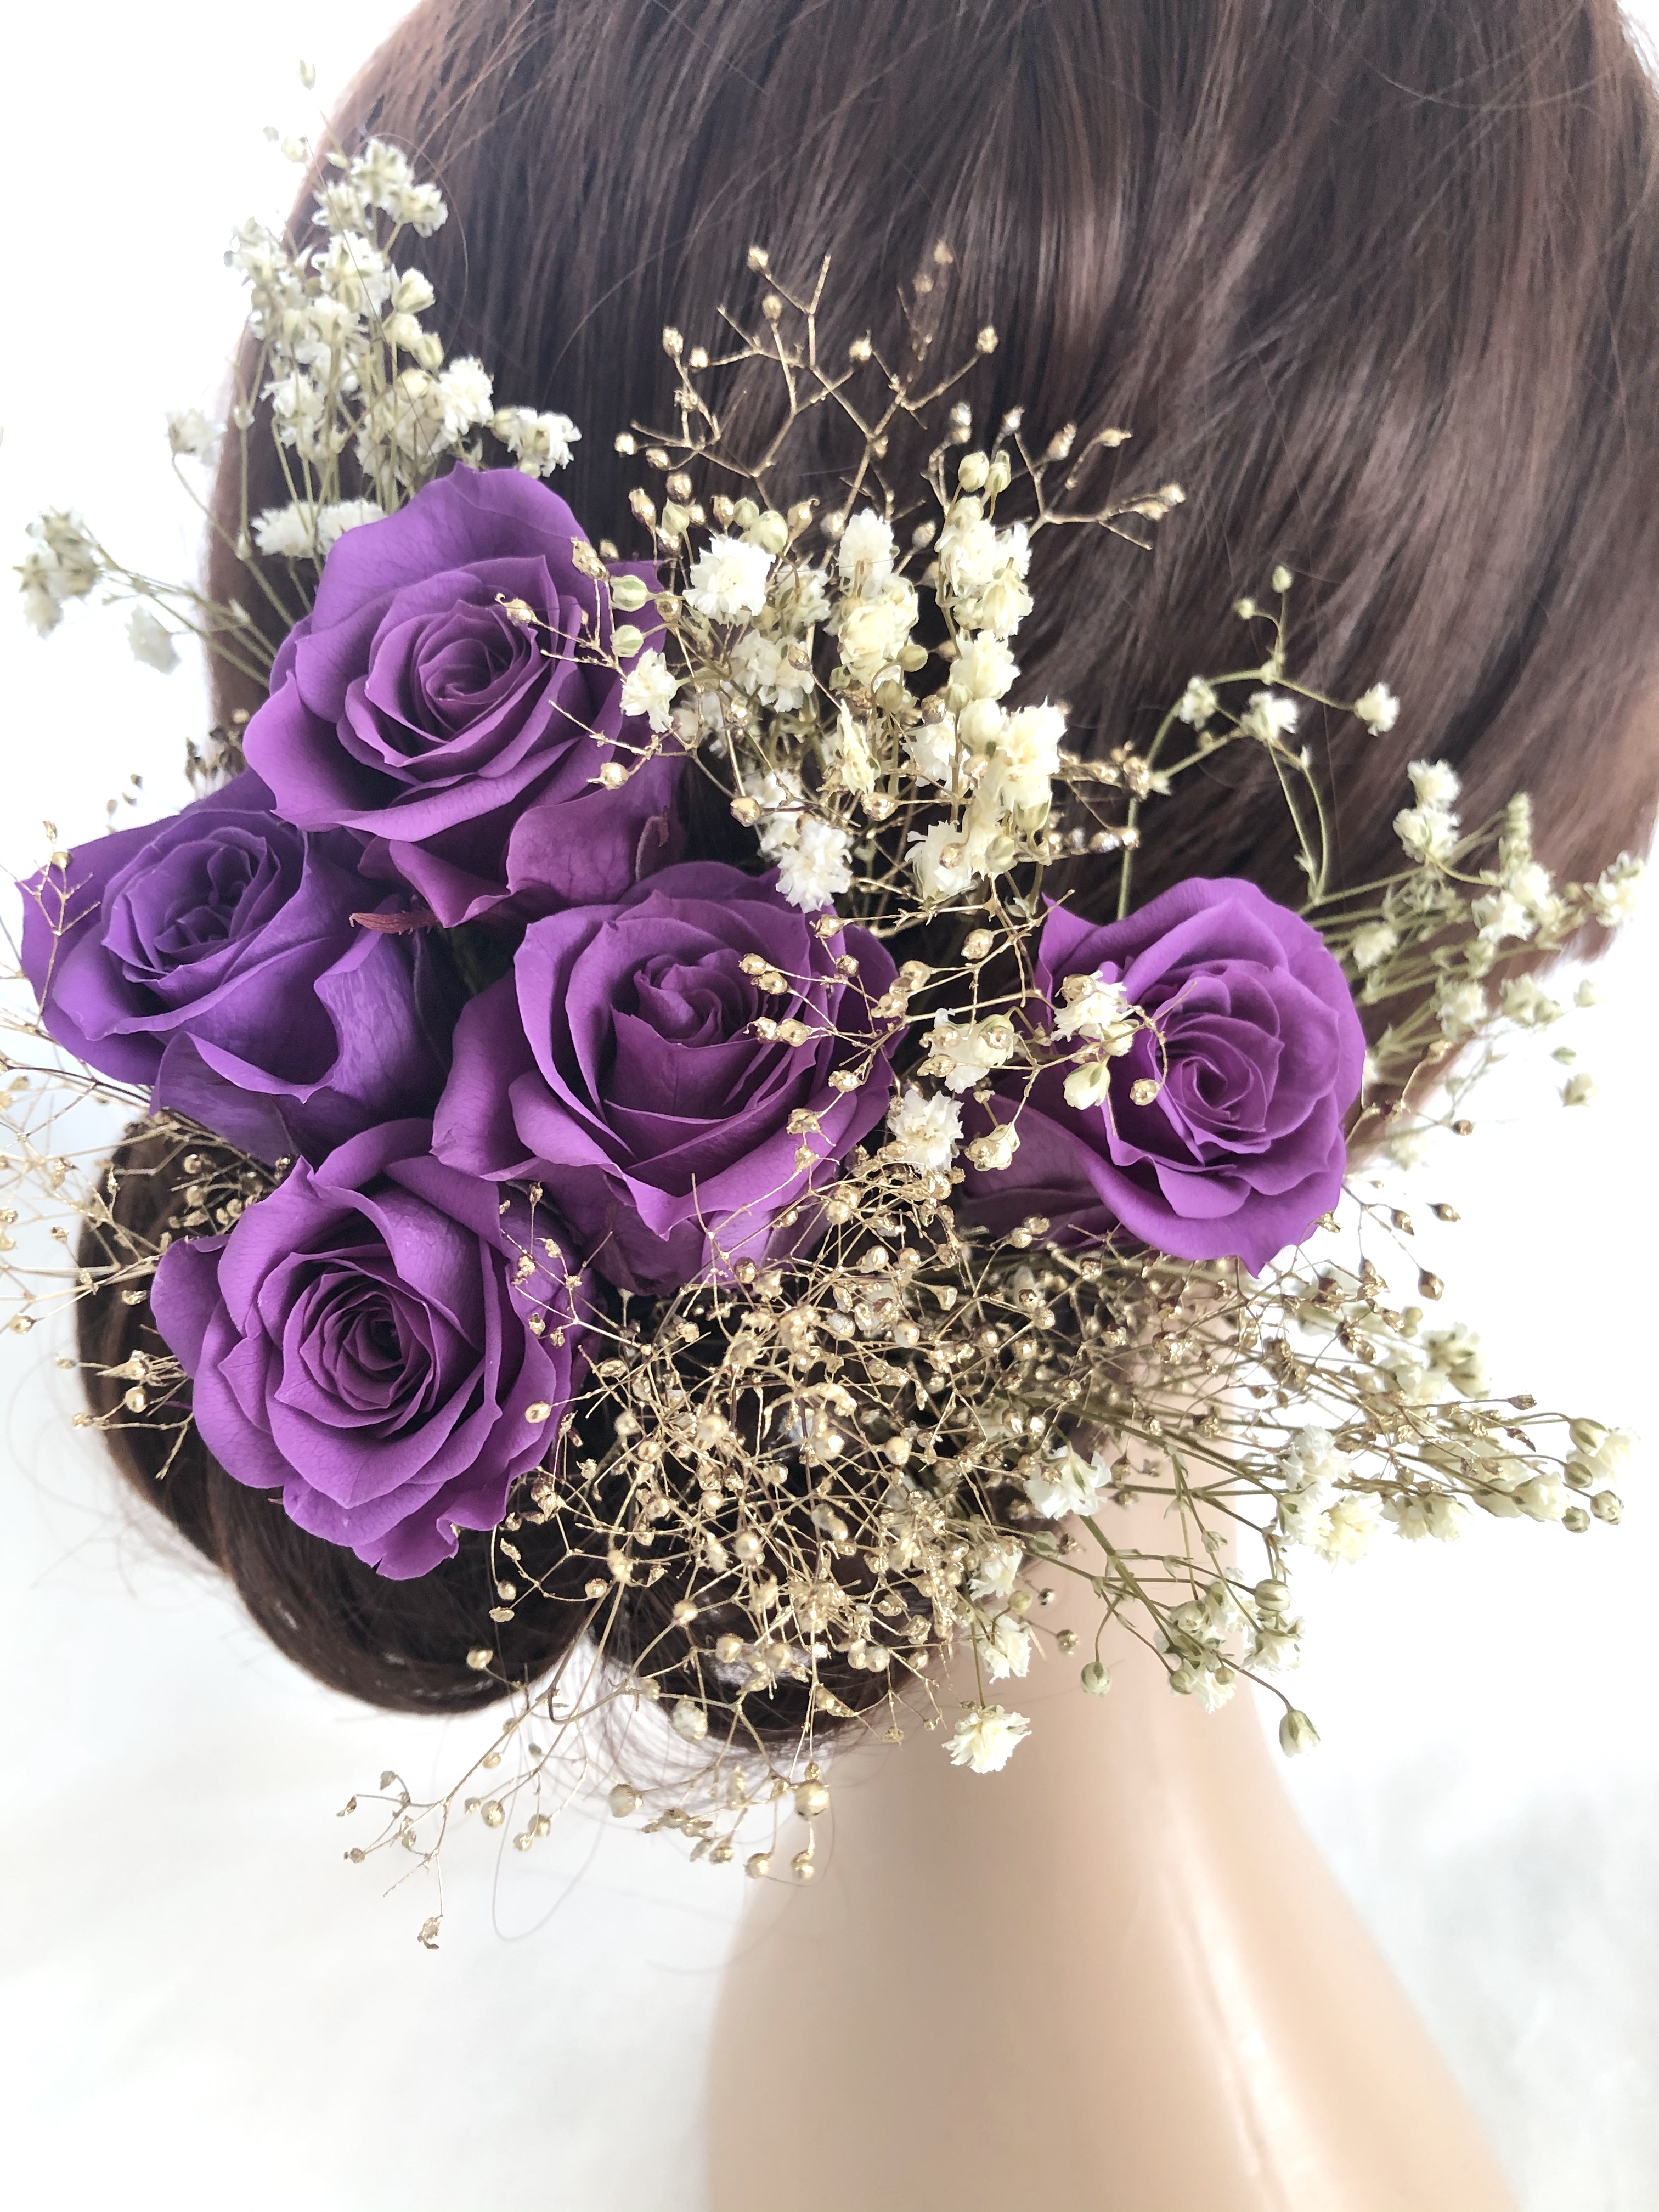 ヘッドドレス 髪飾りプリザーブドフラワー ウェディング 前撮り和装 紫の薔薇 Iichi ハンドメイド クラフト作品 手仕事品の通販